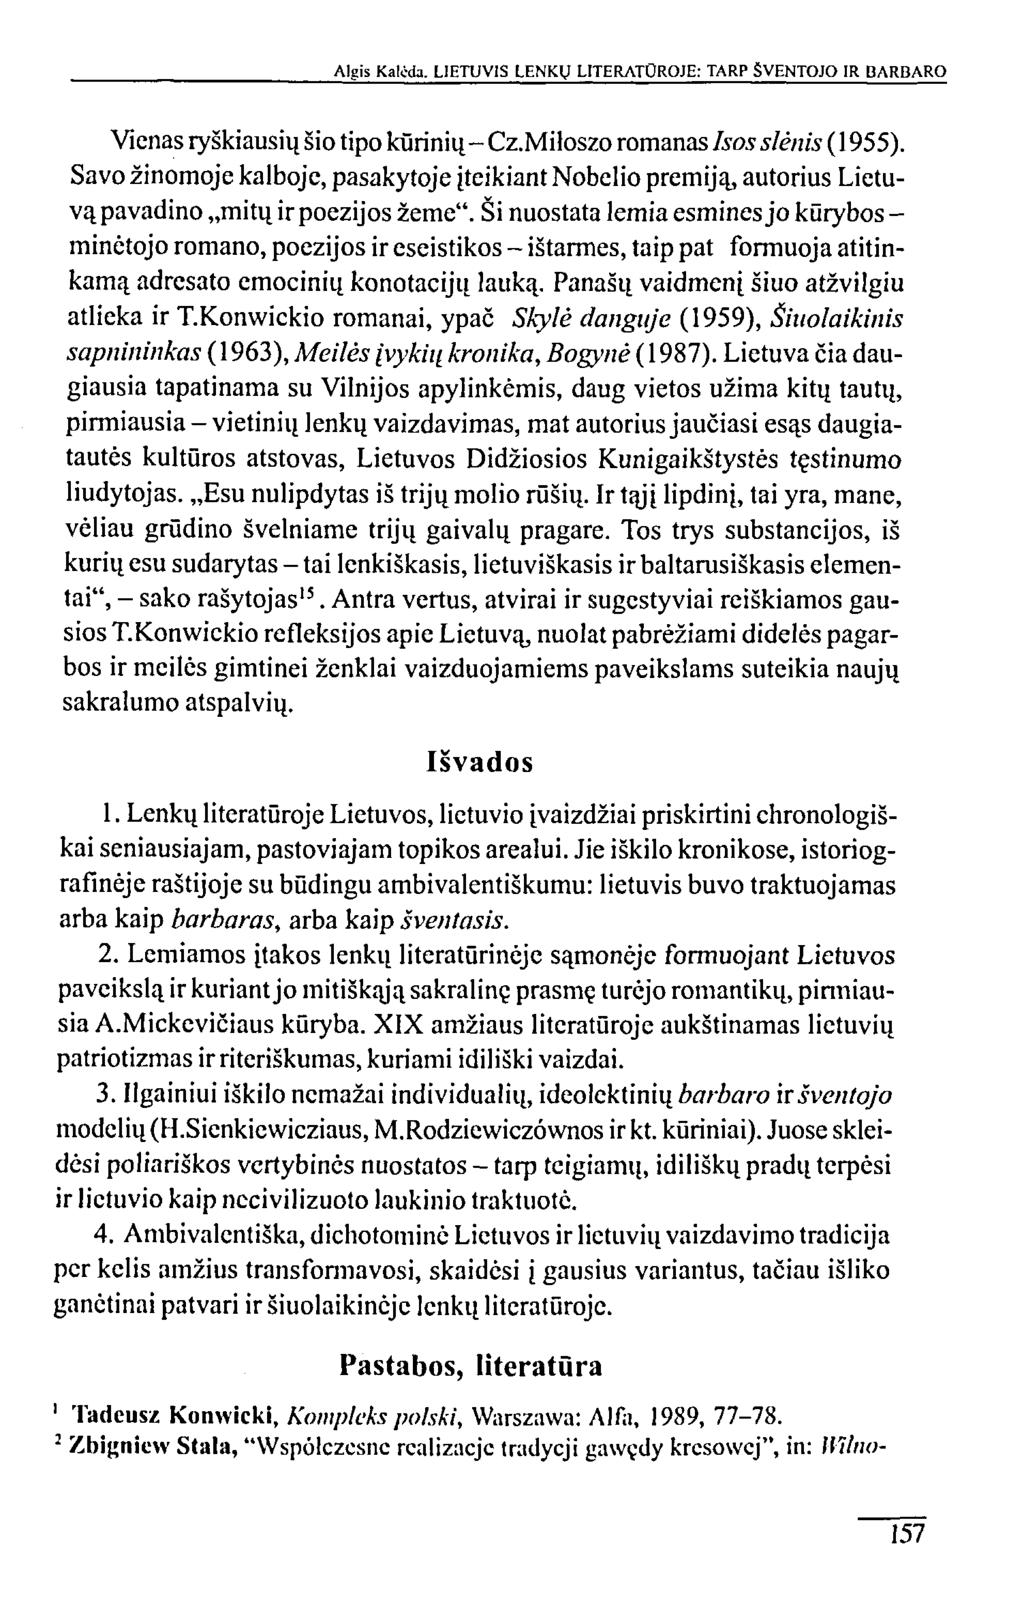 Algis Kalčda. LIETUVIS LENKŲ LITERATŪROJE: TARP ŠVENTOJO IR BARBARO Vienas ryškiausių šio tipo kūrinių- Cz.Miloszo romanas įsos slėnis (1955).